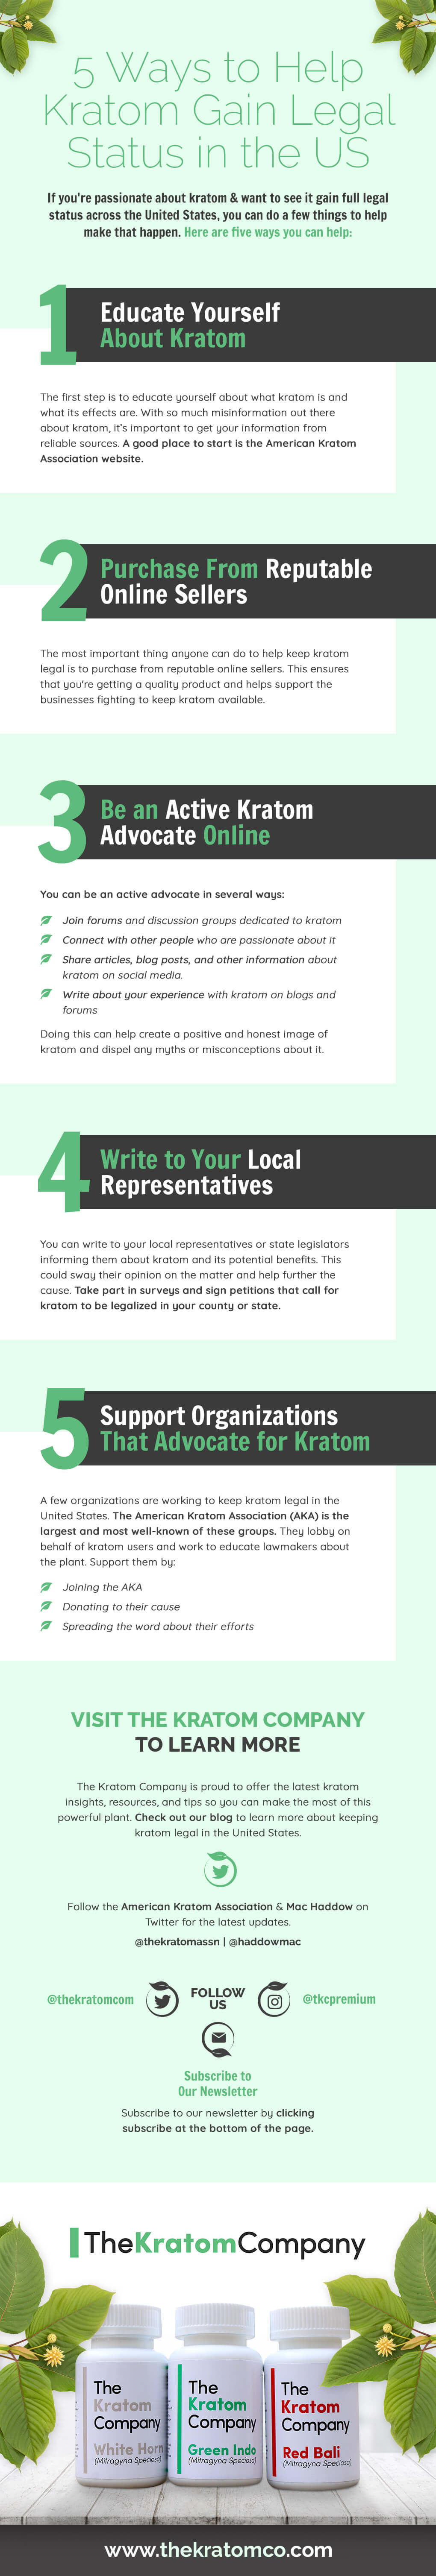 5 Ways To Help Kratom Gain Legal Status In The US